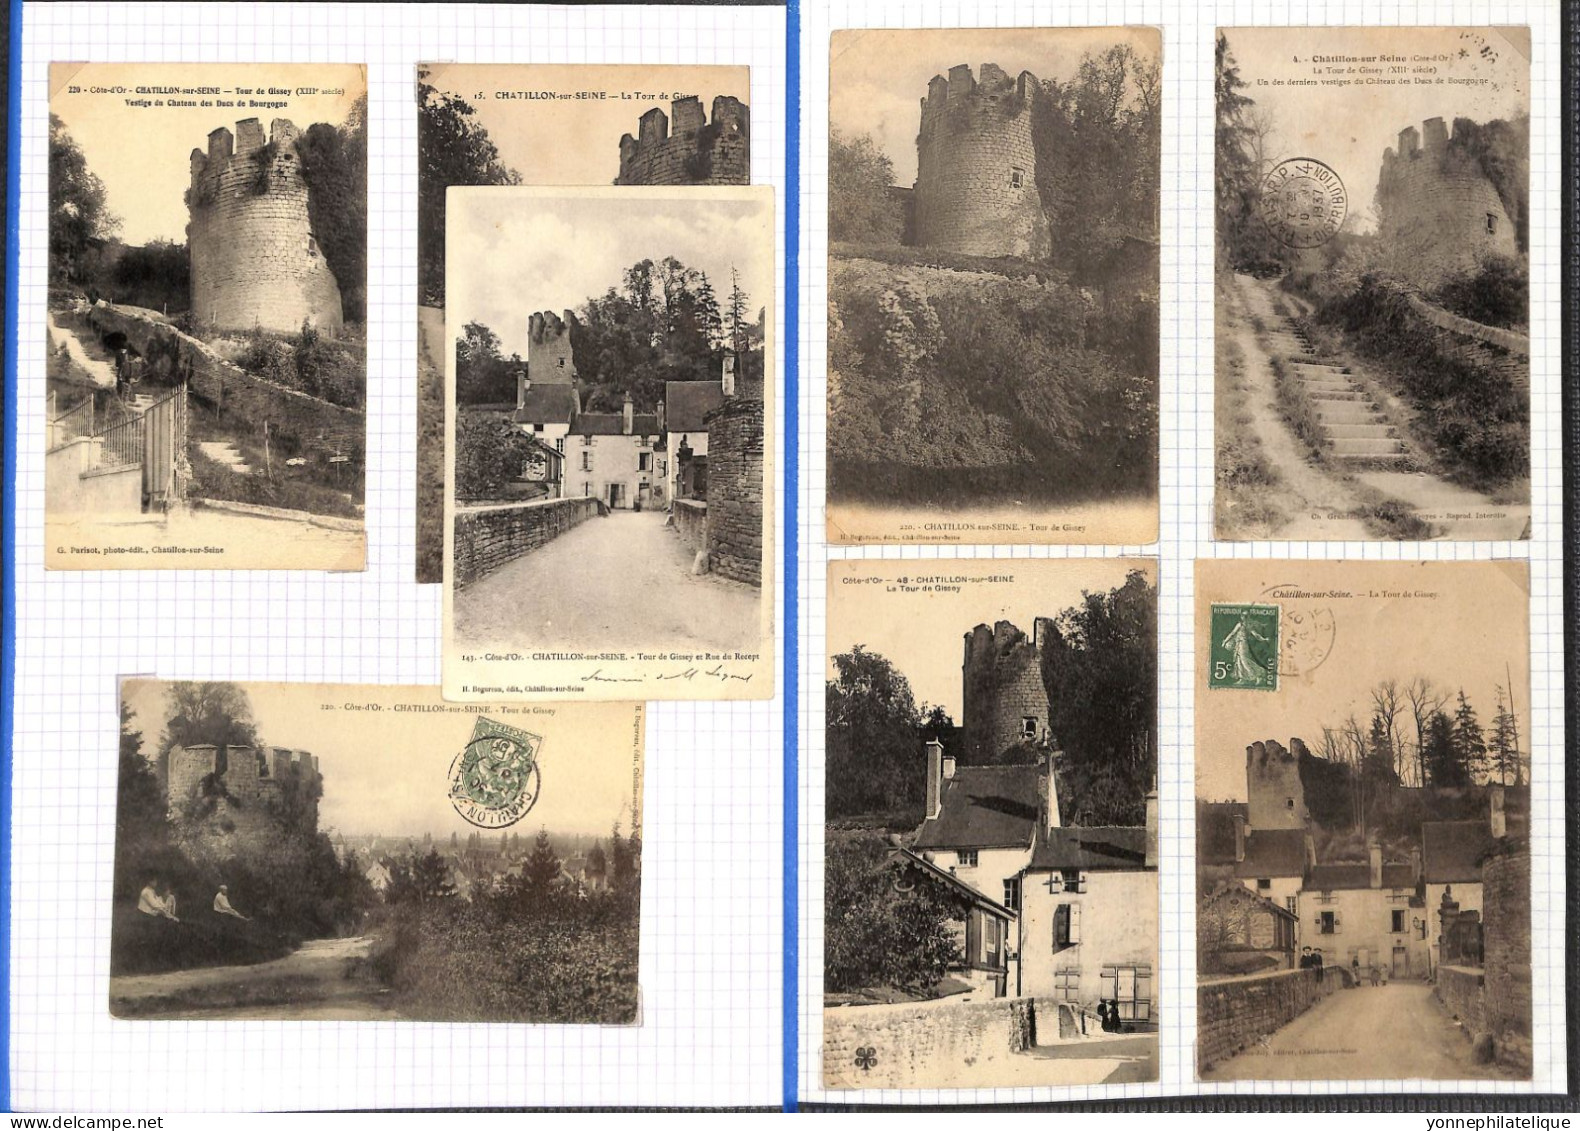 21  - COTE D'OR - CHATILLON SUR SEINE - Collection de 260 cpa -voir tous les scans - A SAISIR -(2404/RIC15)